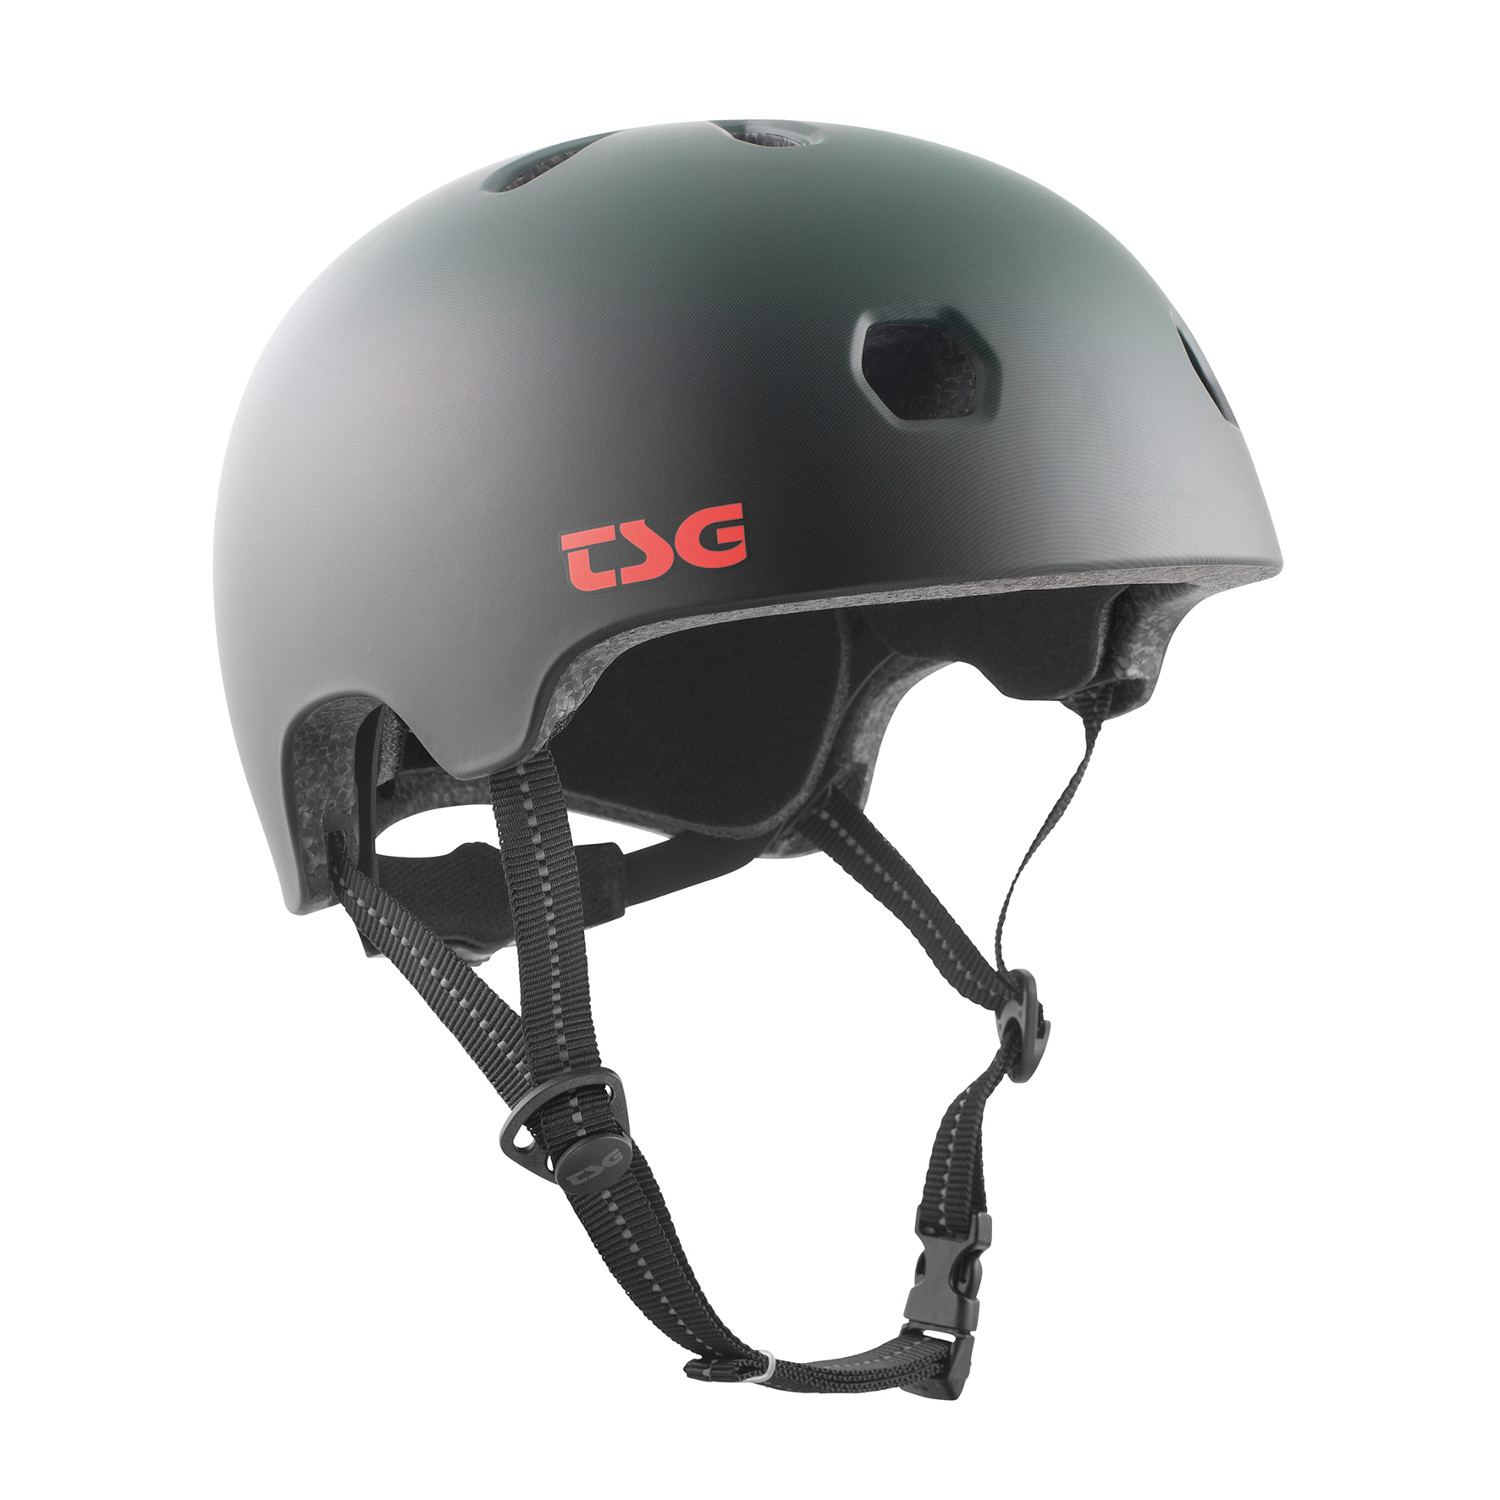 TSG BMX/Dirt Helmet Meta Graphic Design - Matter